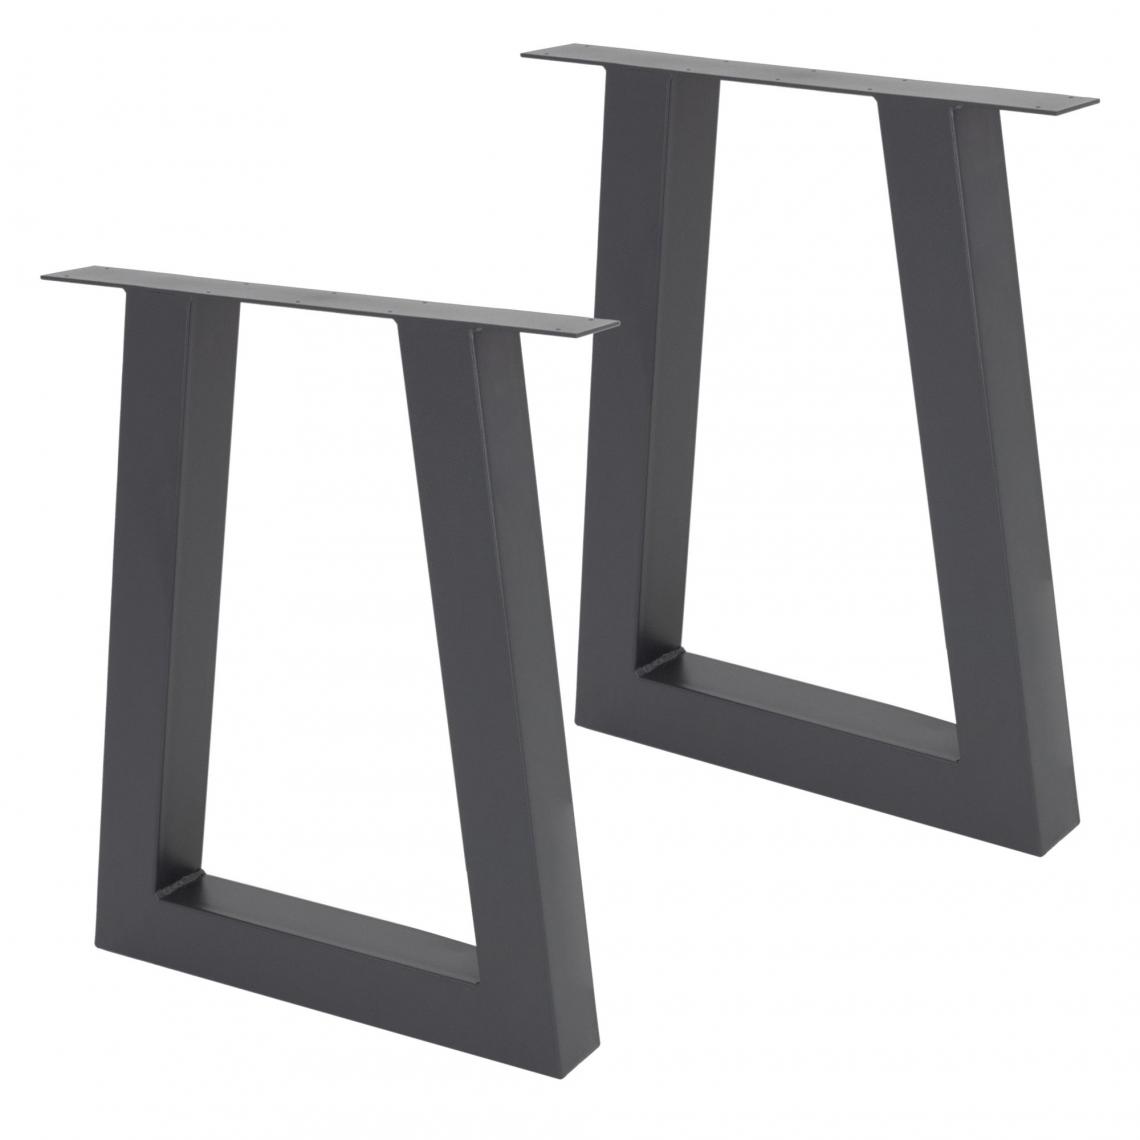 Ecd Germany - 2 x Pieds de table industriel cadre de meuble en forme de H anthracite 60x72 cm - Pieds & roulettes pour meuble